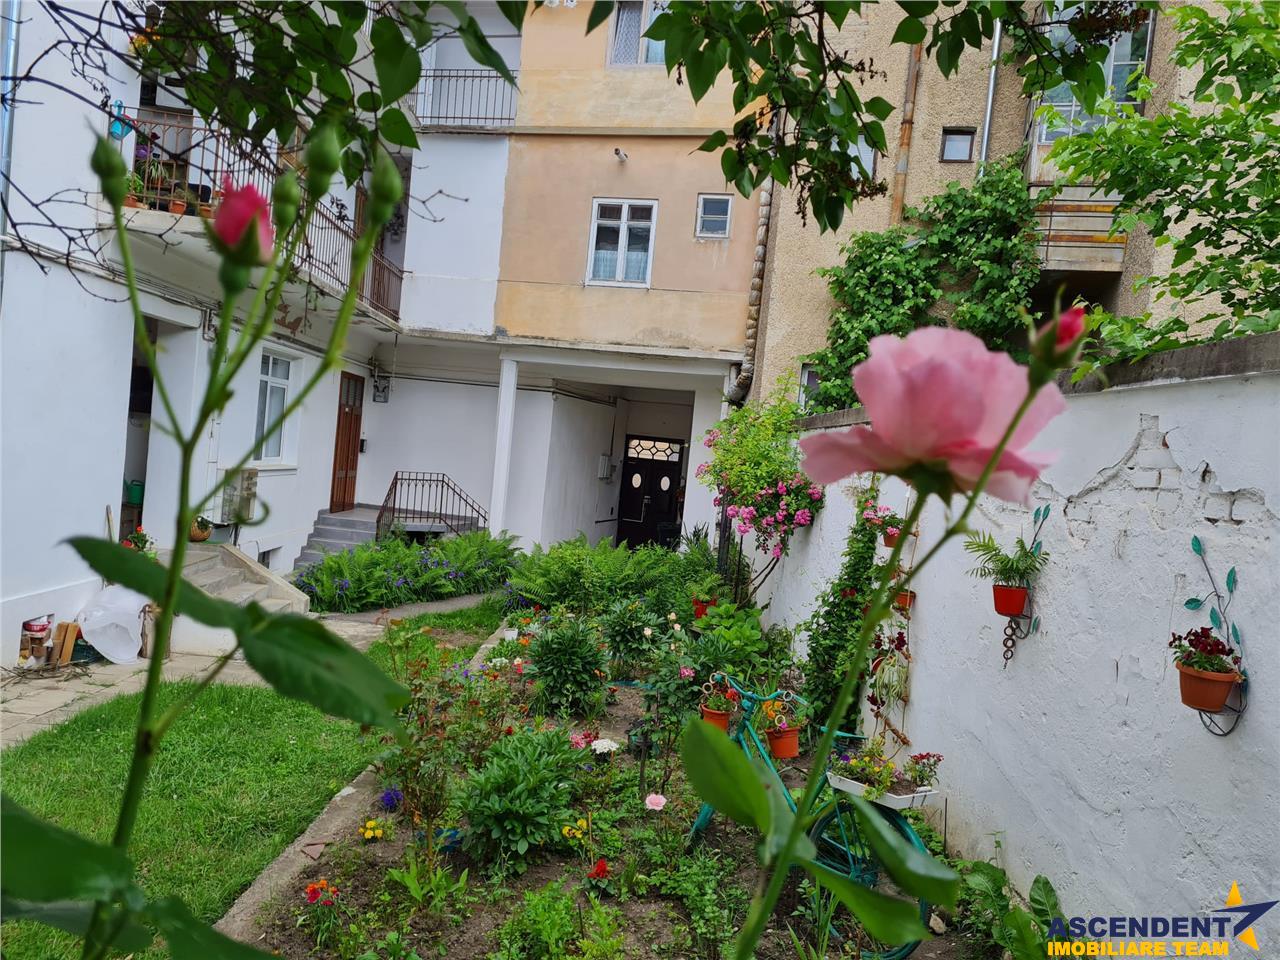 Proprietate la casa, cu gradina de flori, zona rezidentiala Centrala a Brasovului